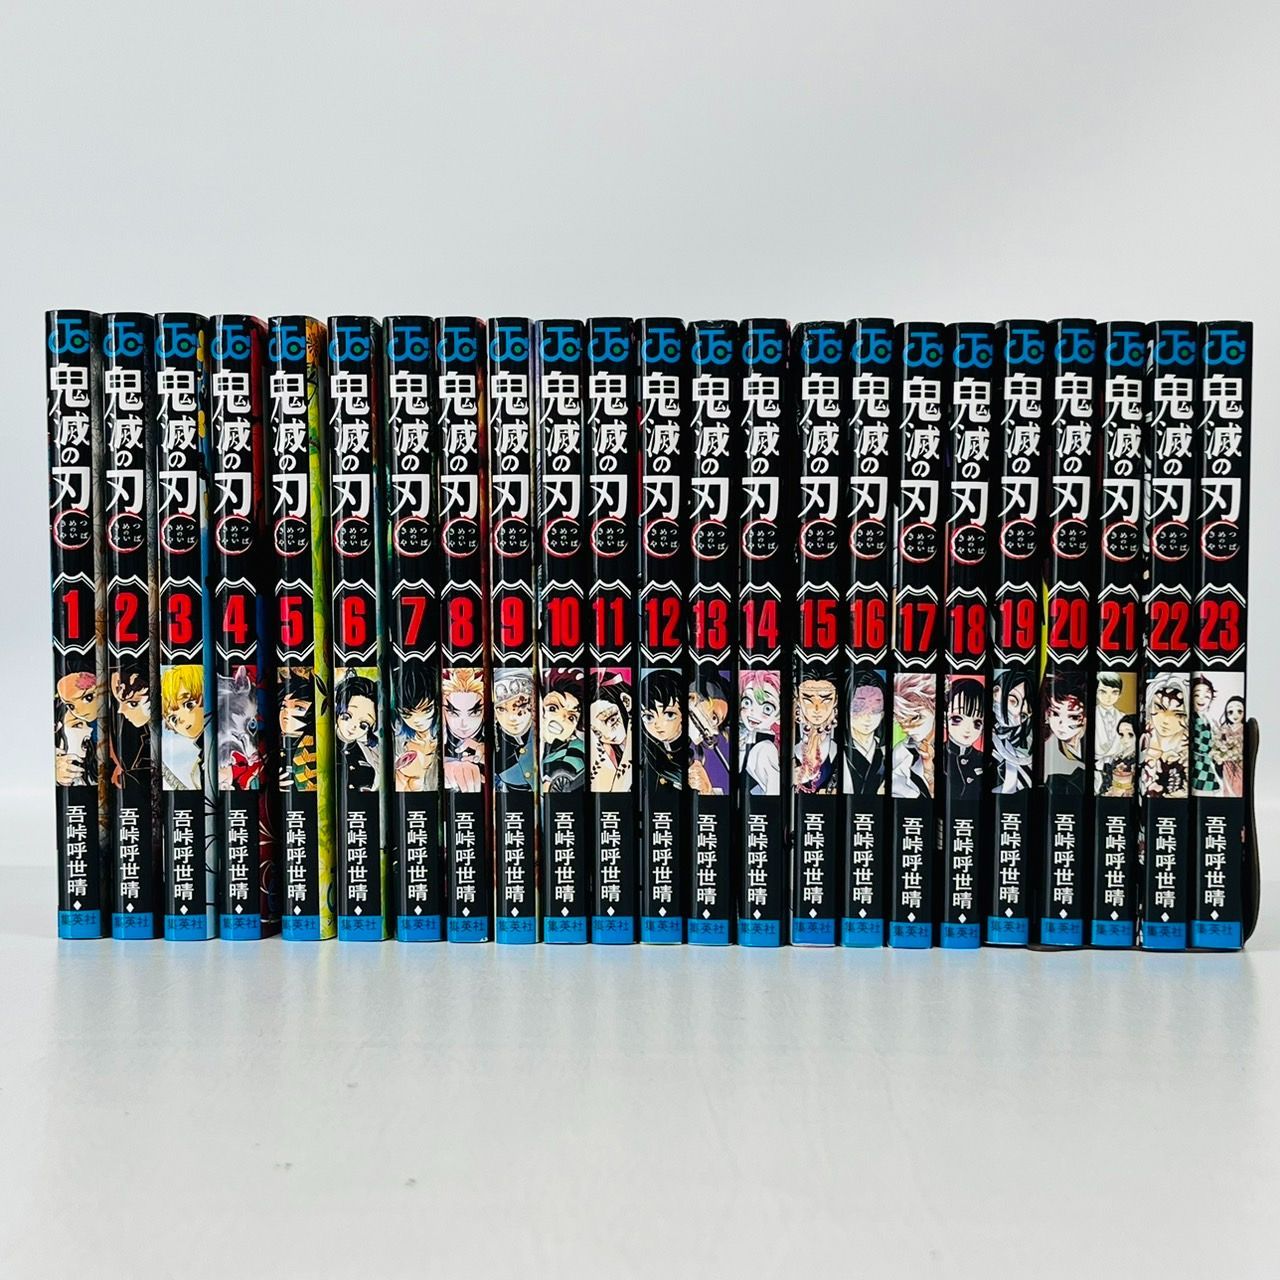 鬼滅の刃 コミックス 全23巻 セット 漫画全巻セット - スターホビー 